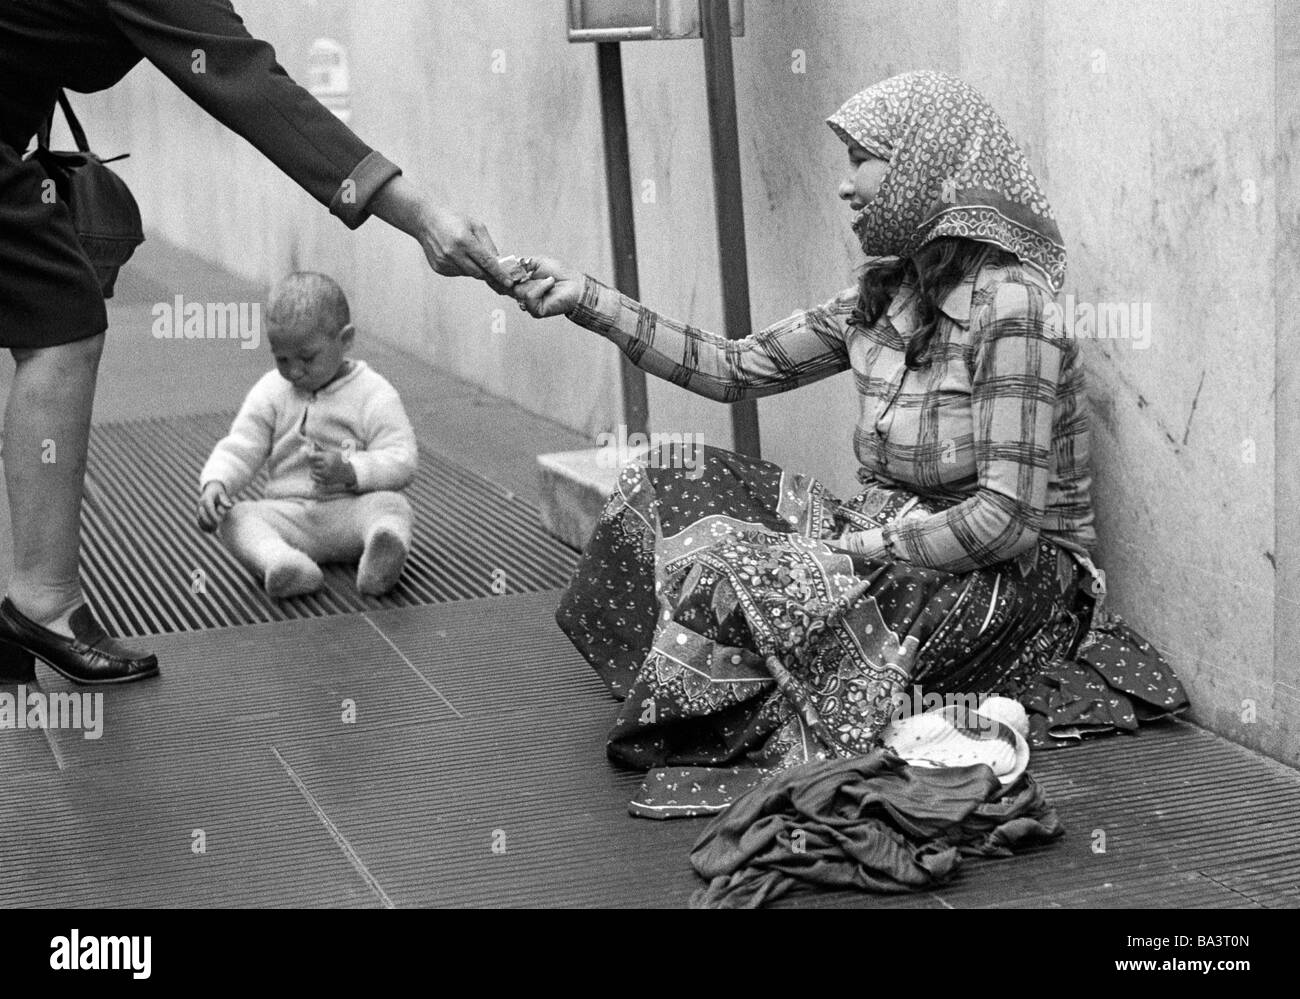 Années 70, photo en noir et blanc, personnage, pauvreté, mendiant-femme est assise au bord de la route, son bébé joue sur une grille, d'une femme présente ses gamins, âgés de 25 à 30 ans, de 6 à 12 mois, l'Italie, Lombardie, Milan Banque D'Images